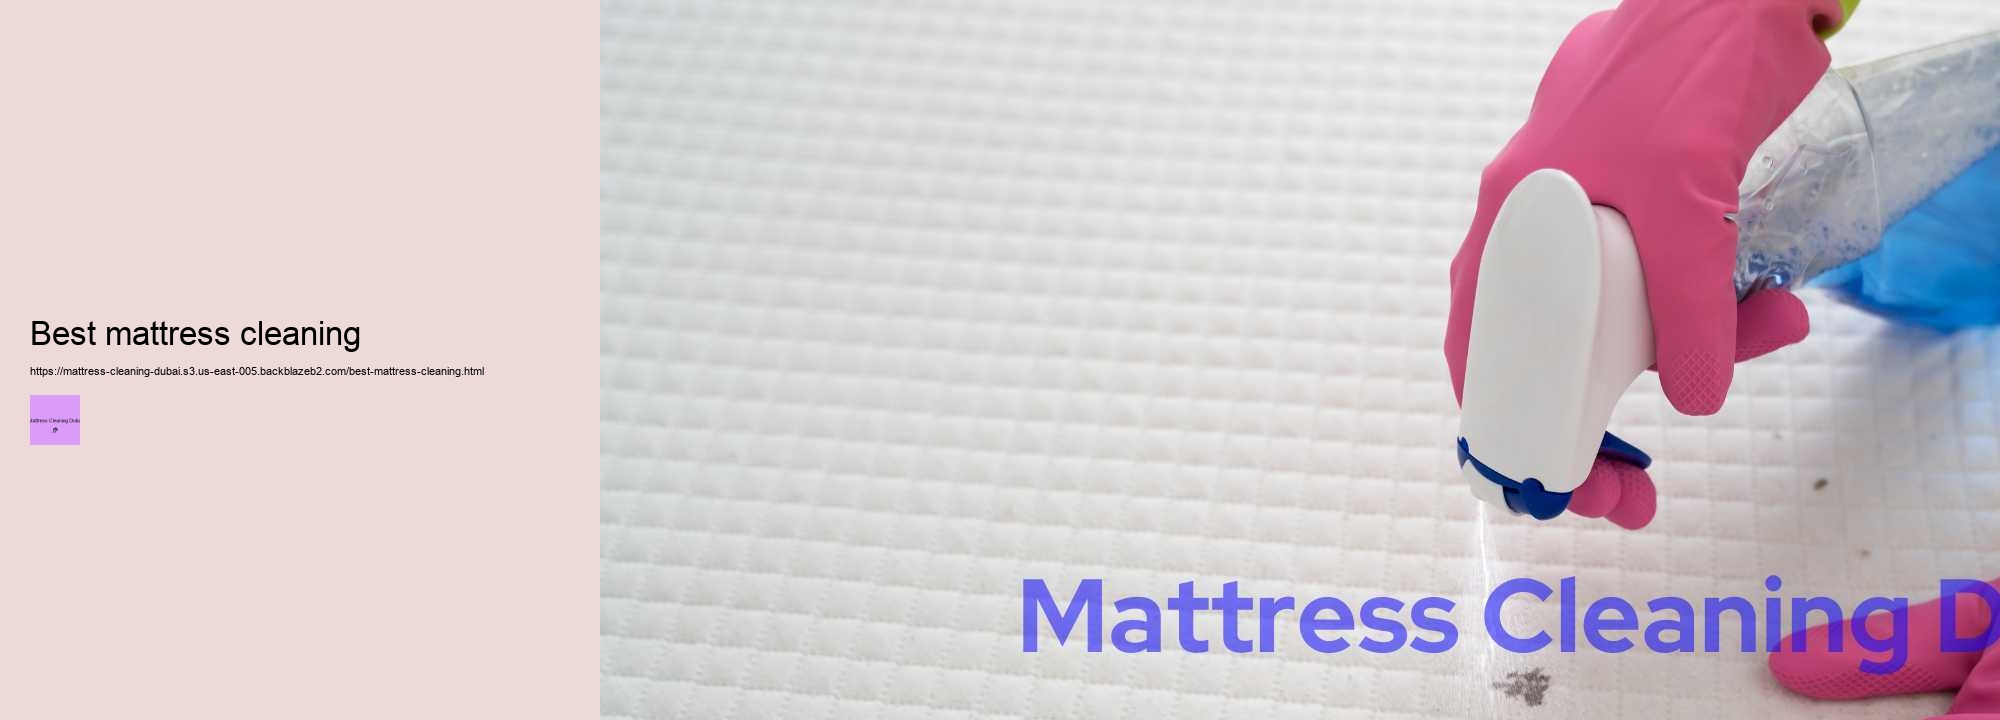 Best mattress cleaning